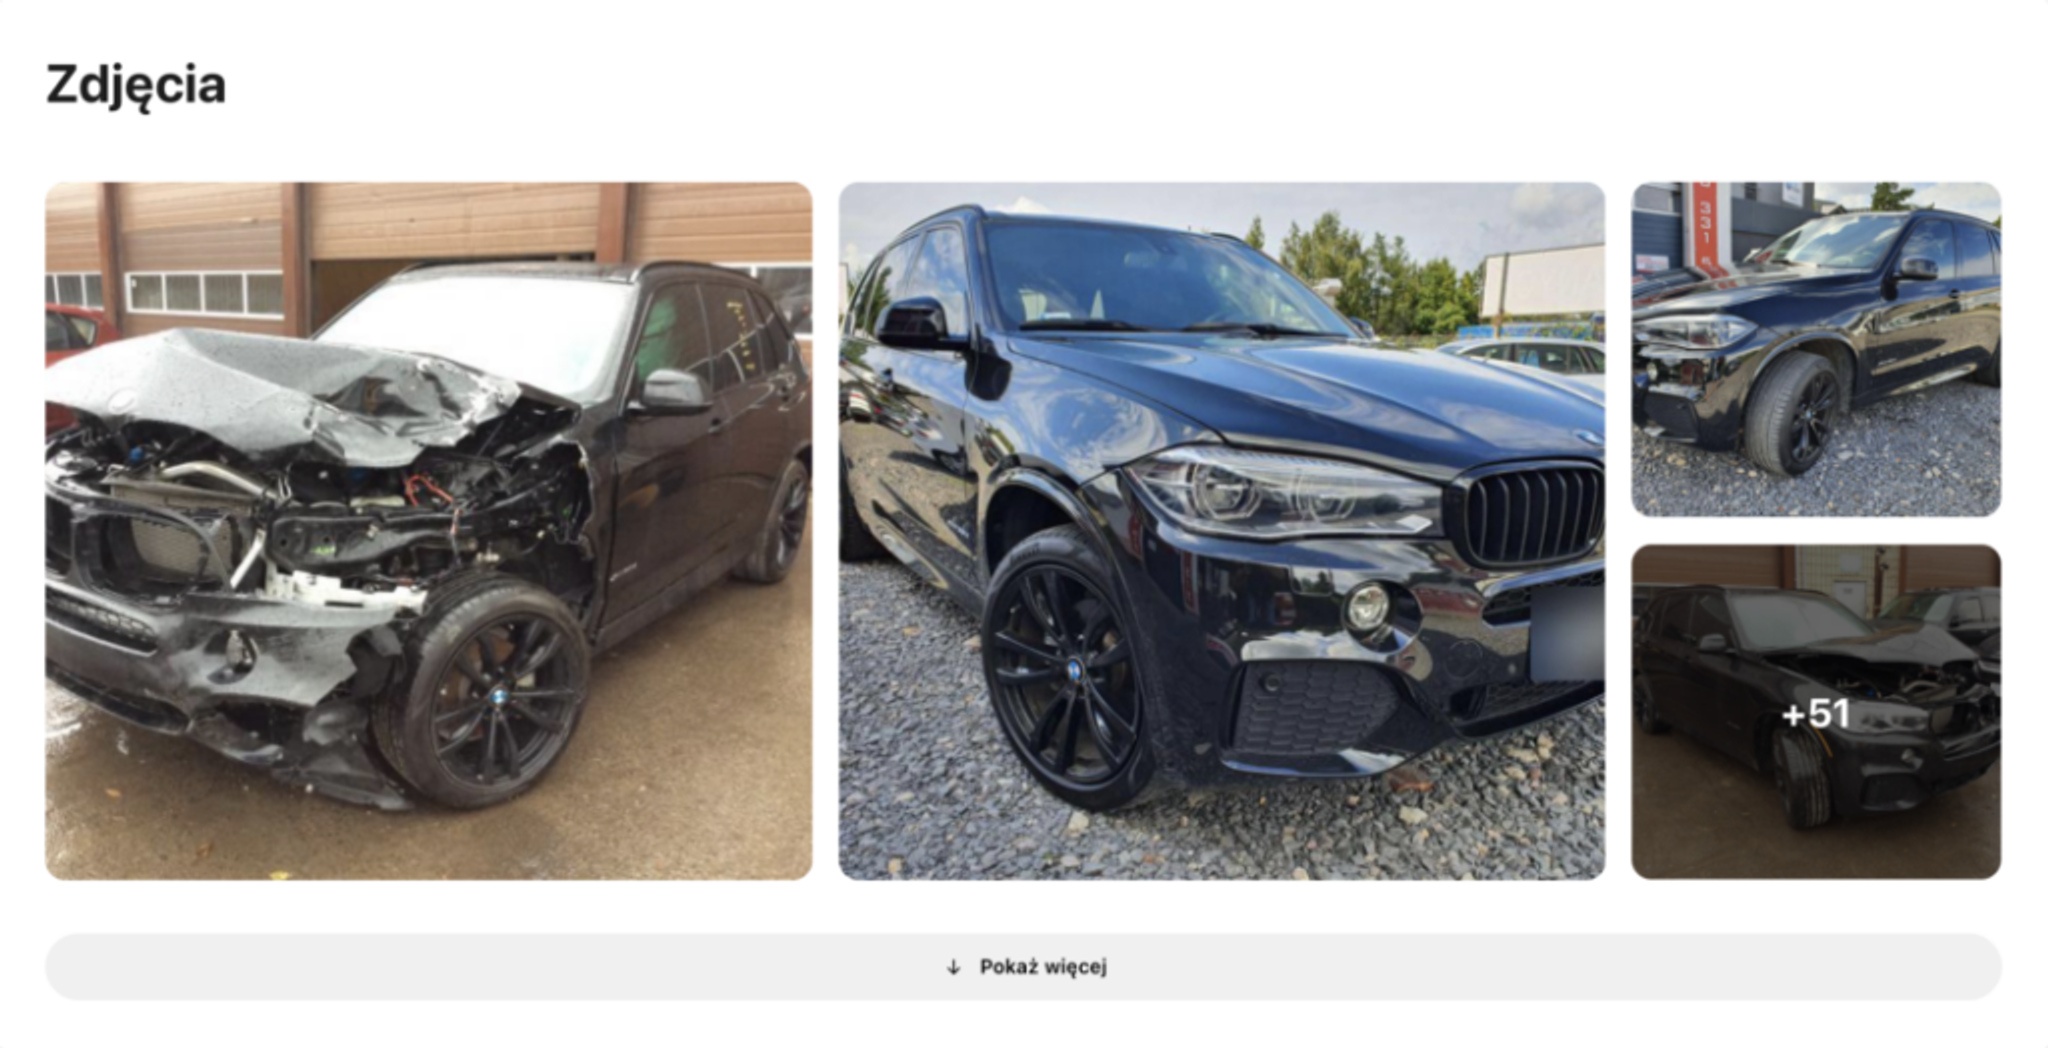 zdjęcia bmw po wypadku znalezione w carVertical, samochód uszkodzony, pojazd rozbity, samochód przed i po poważnych naprawach